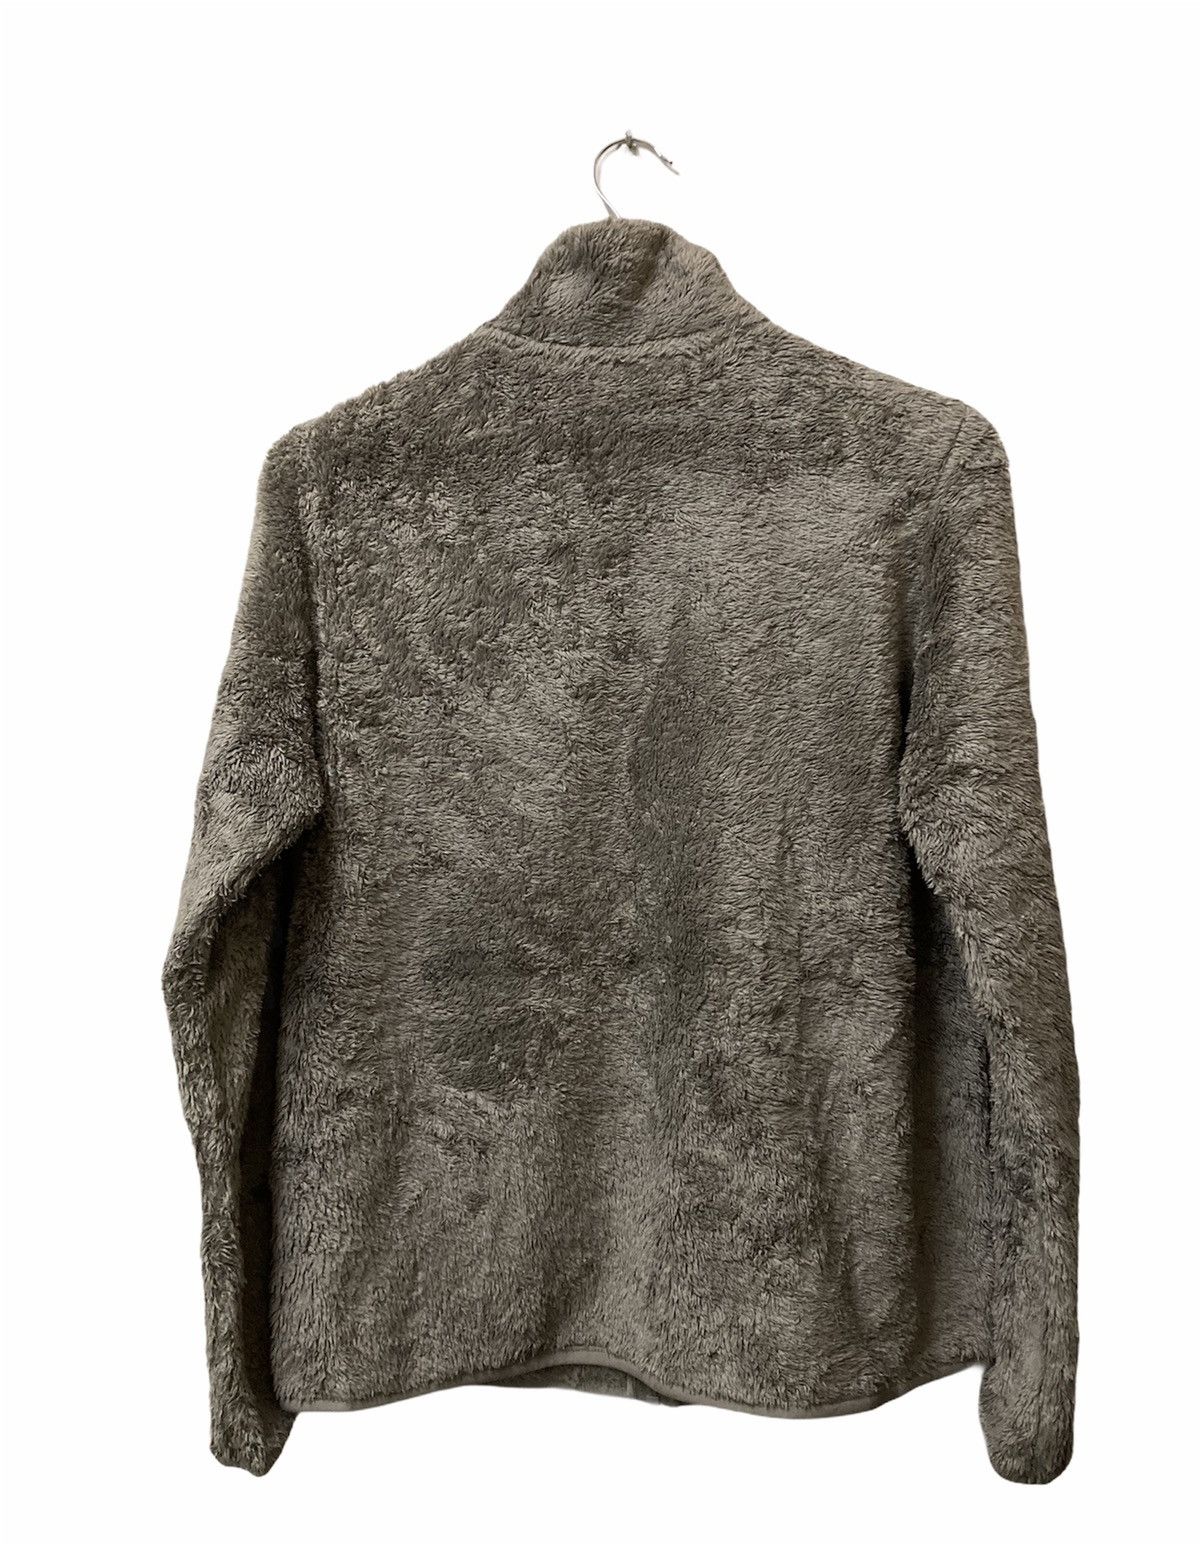 Uniqlo Fluffy Yarn Fleece Full Zipper Long Sleeve Jacket - 2